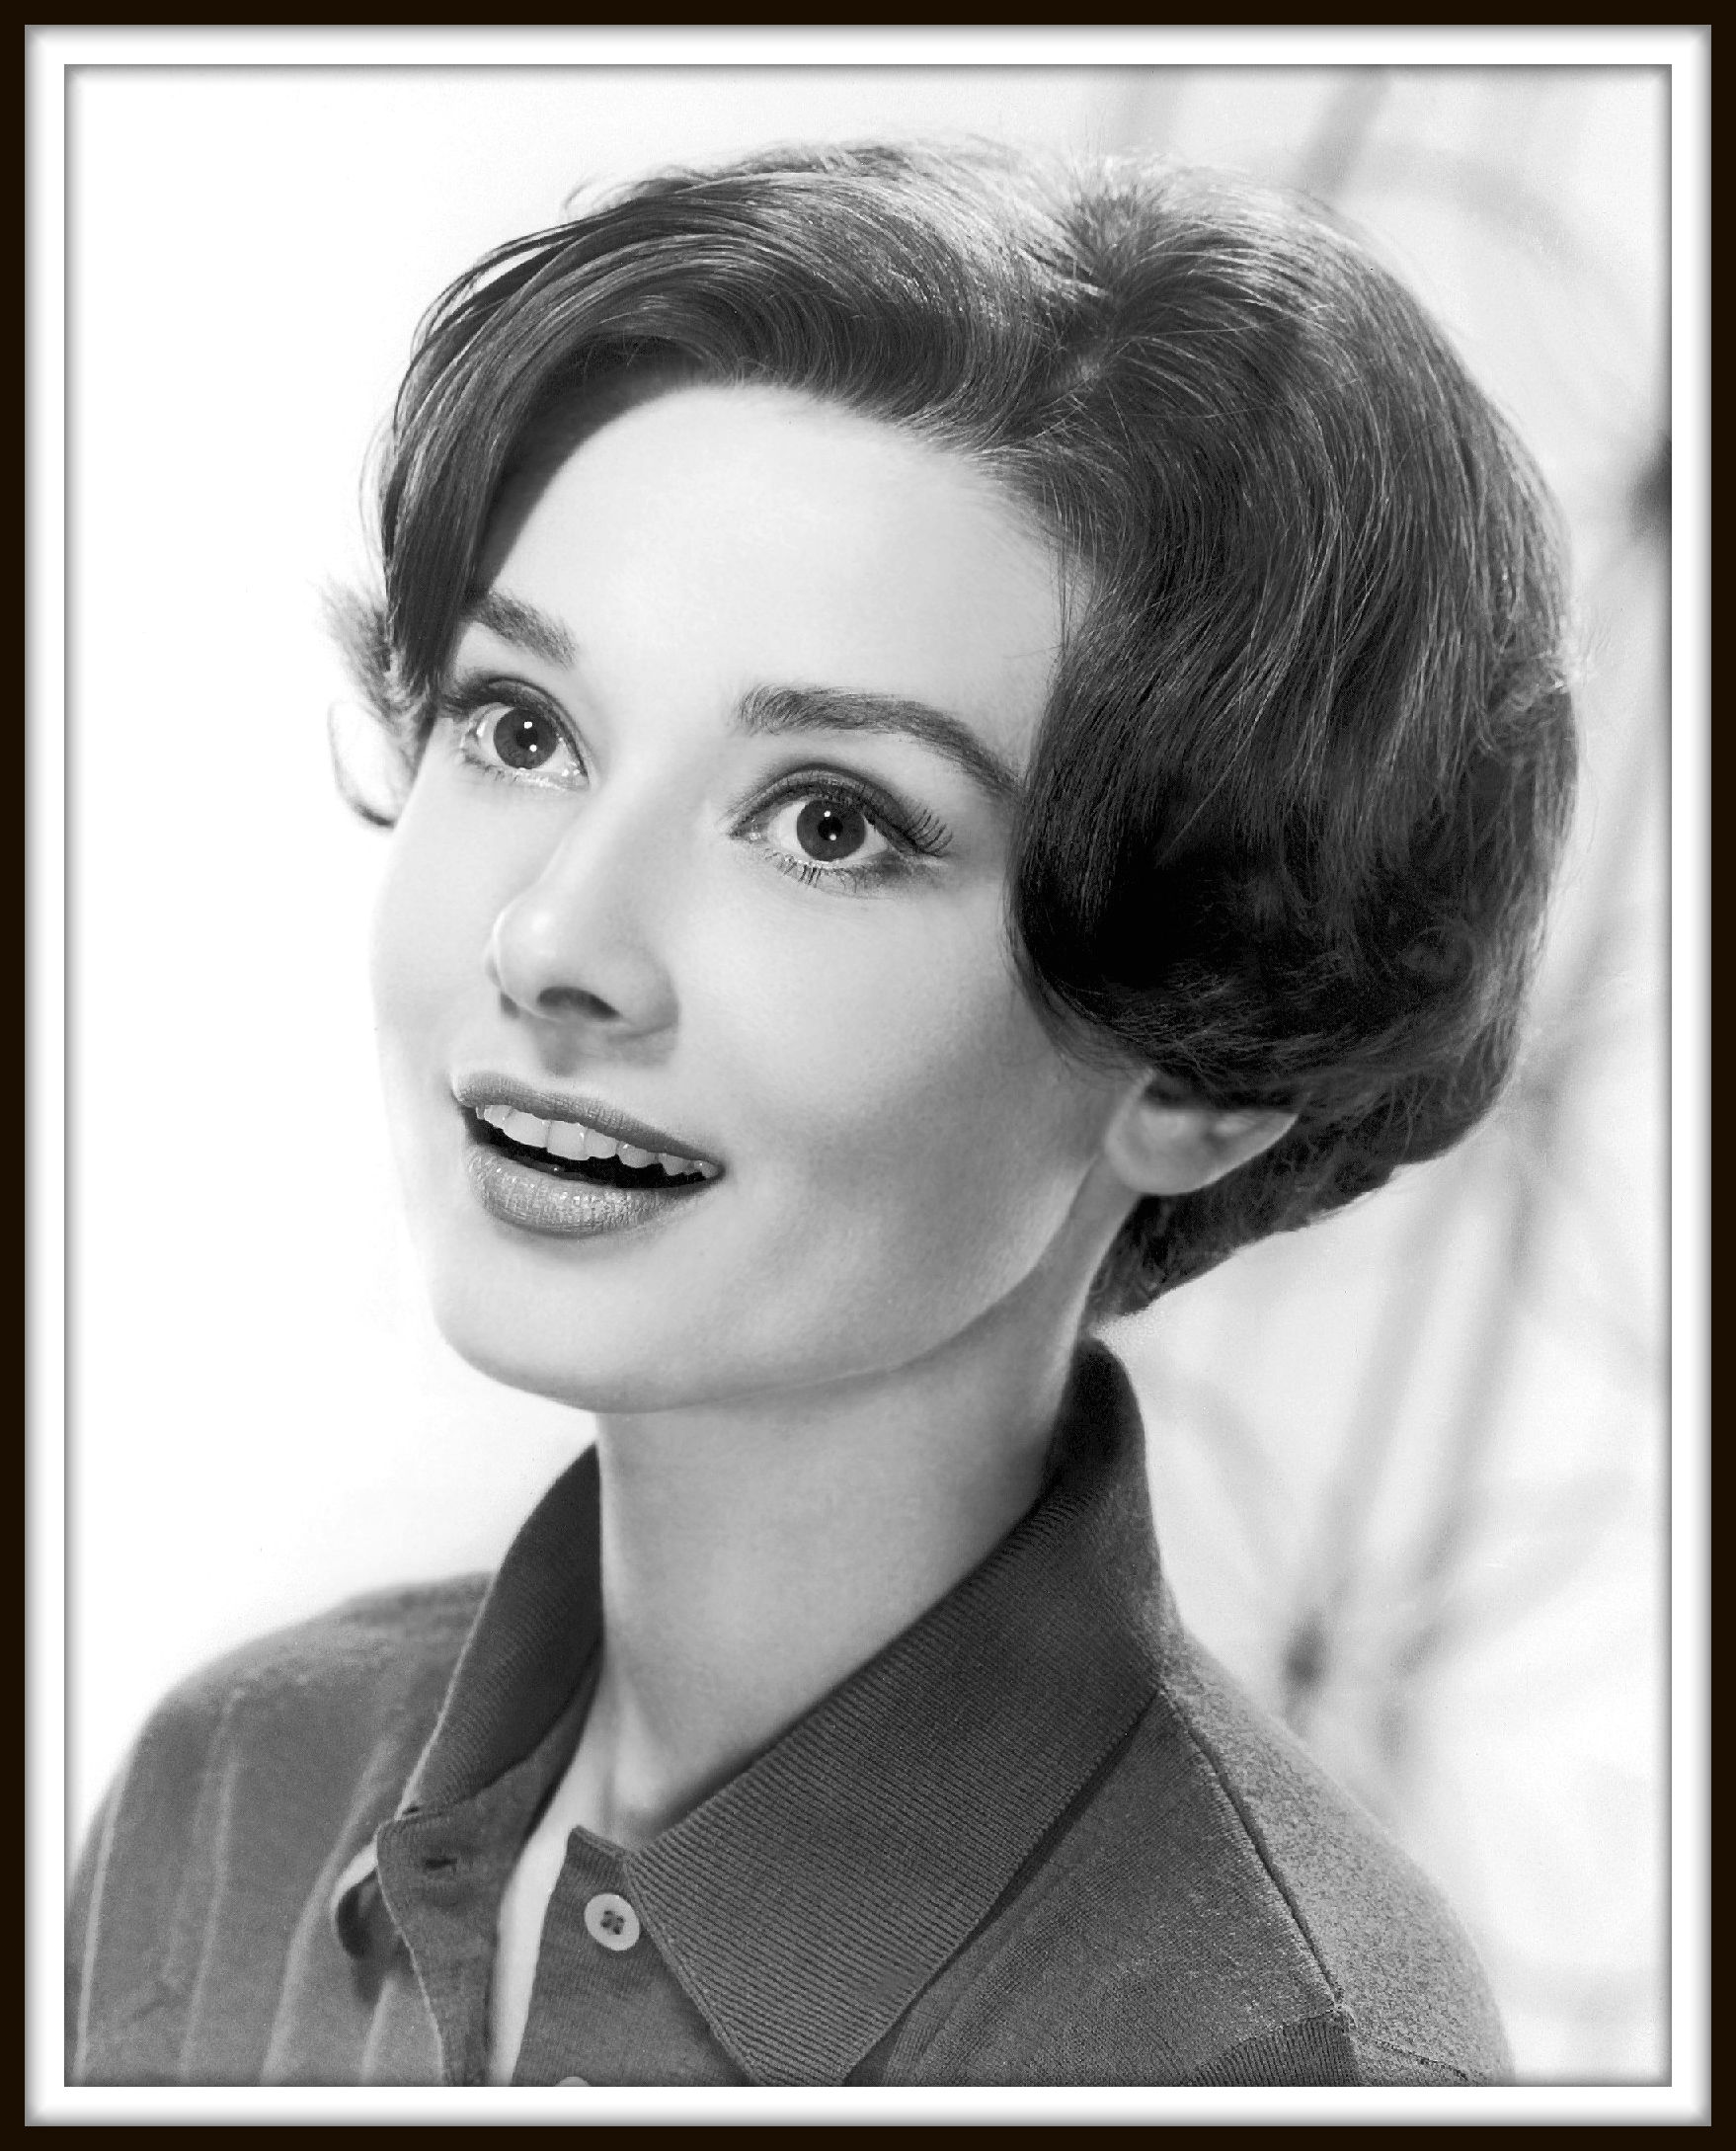 Audrey Hepburn checking a bag. British actress Audrey Hepburn